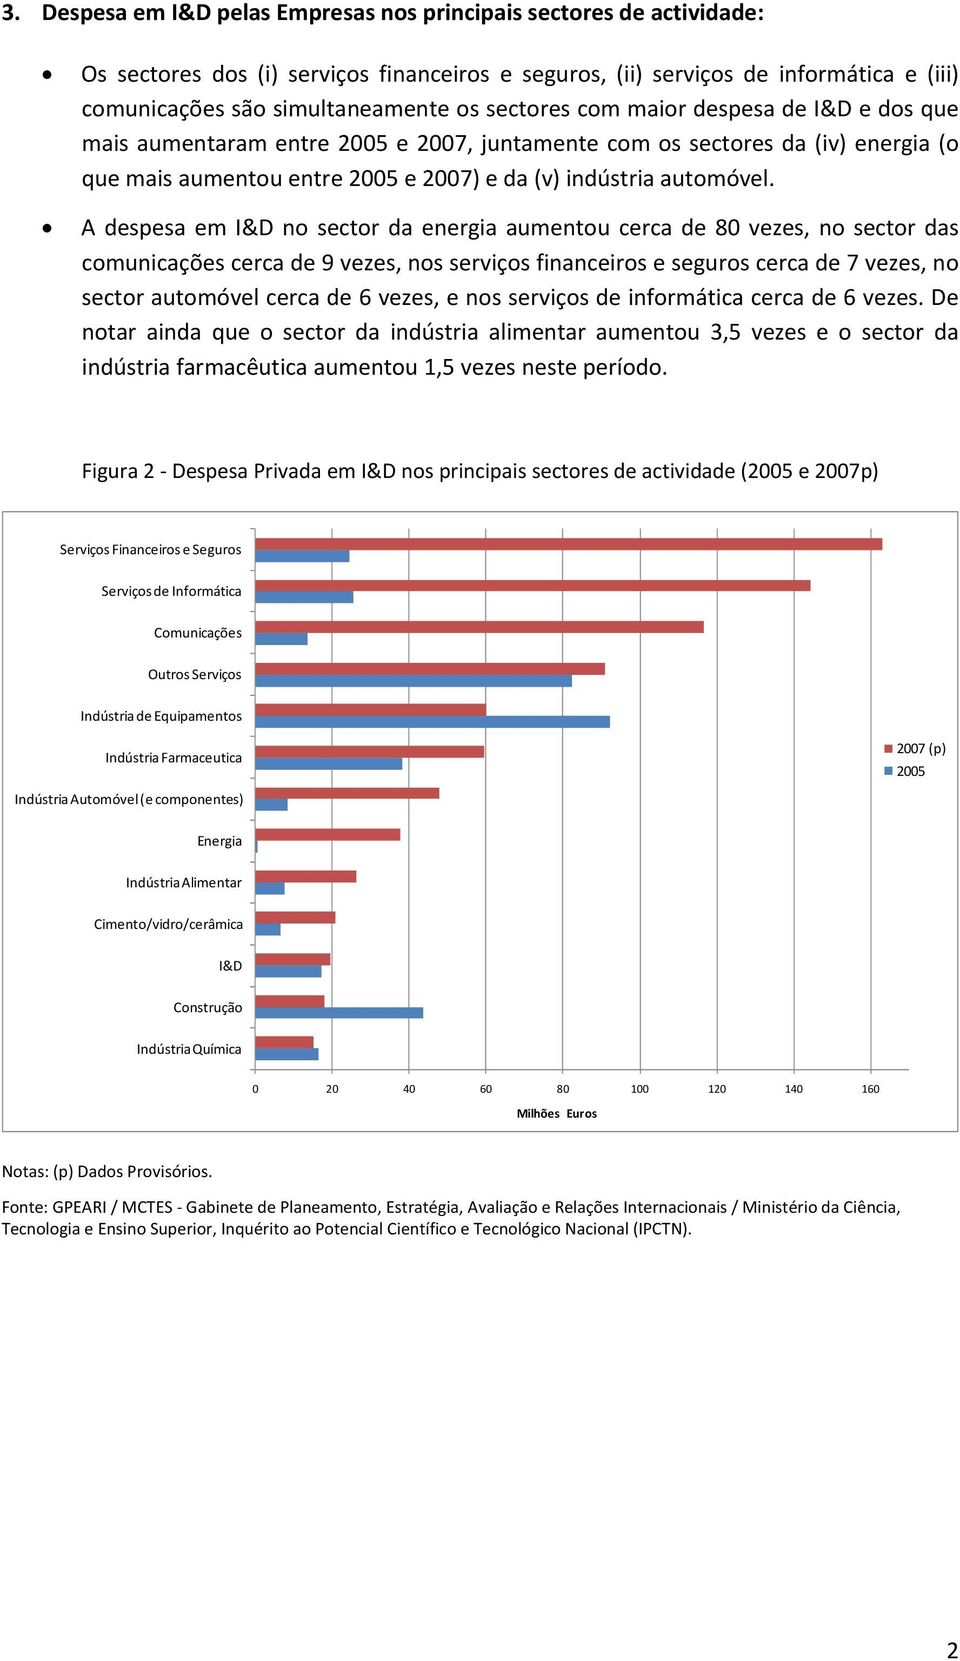 A despesa em I&D no sector da energia aumentou cerca de 80 vezes, no sector das comunicações cerca de 9 vezes, nos serviços financeiros e seguros cerca de 7 vezes, no sector automóvel cerca de 6